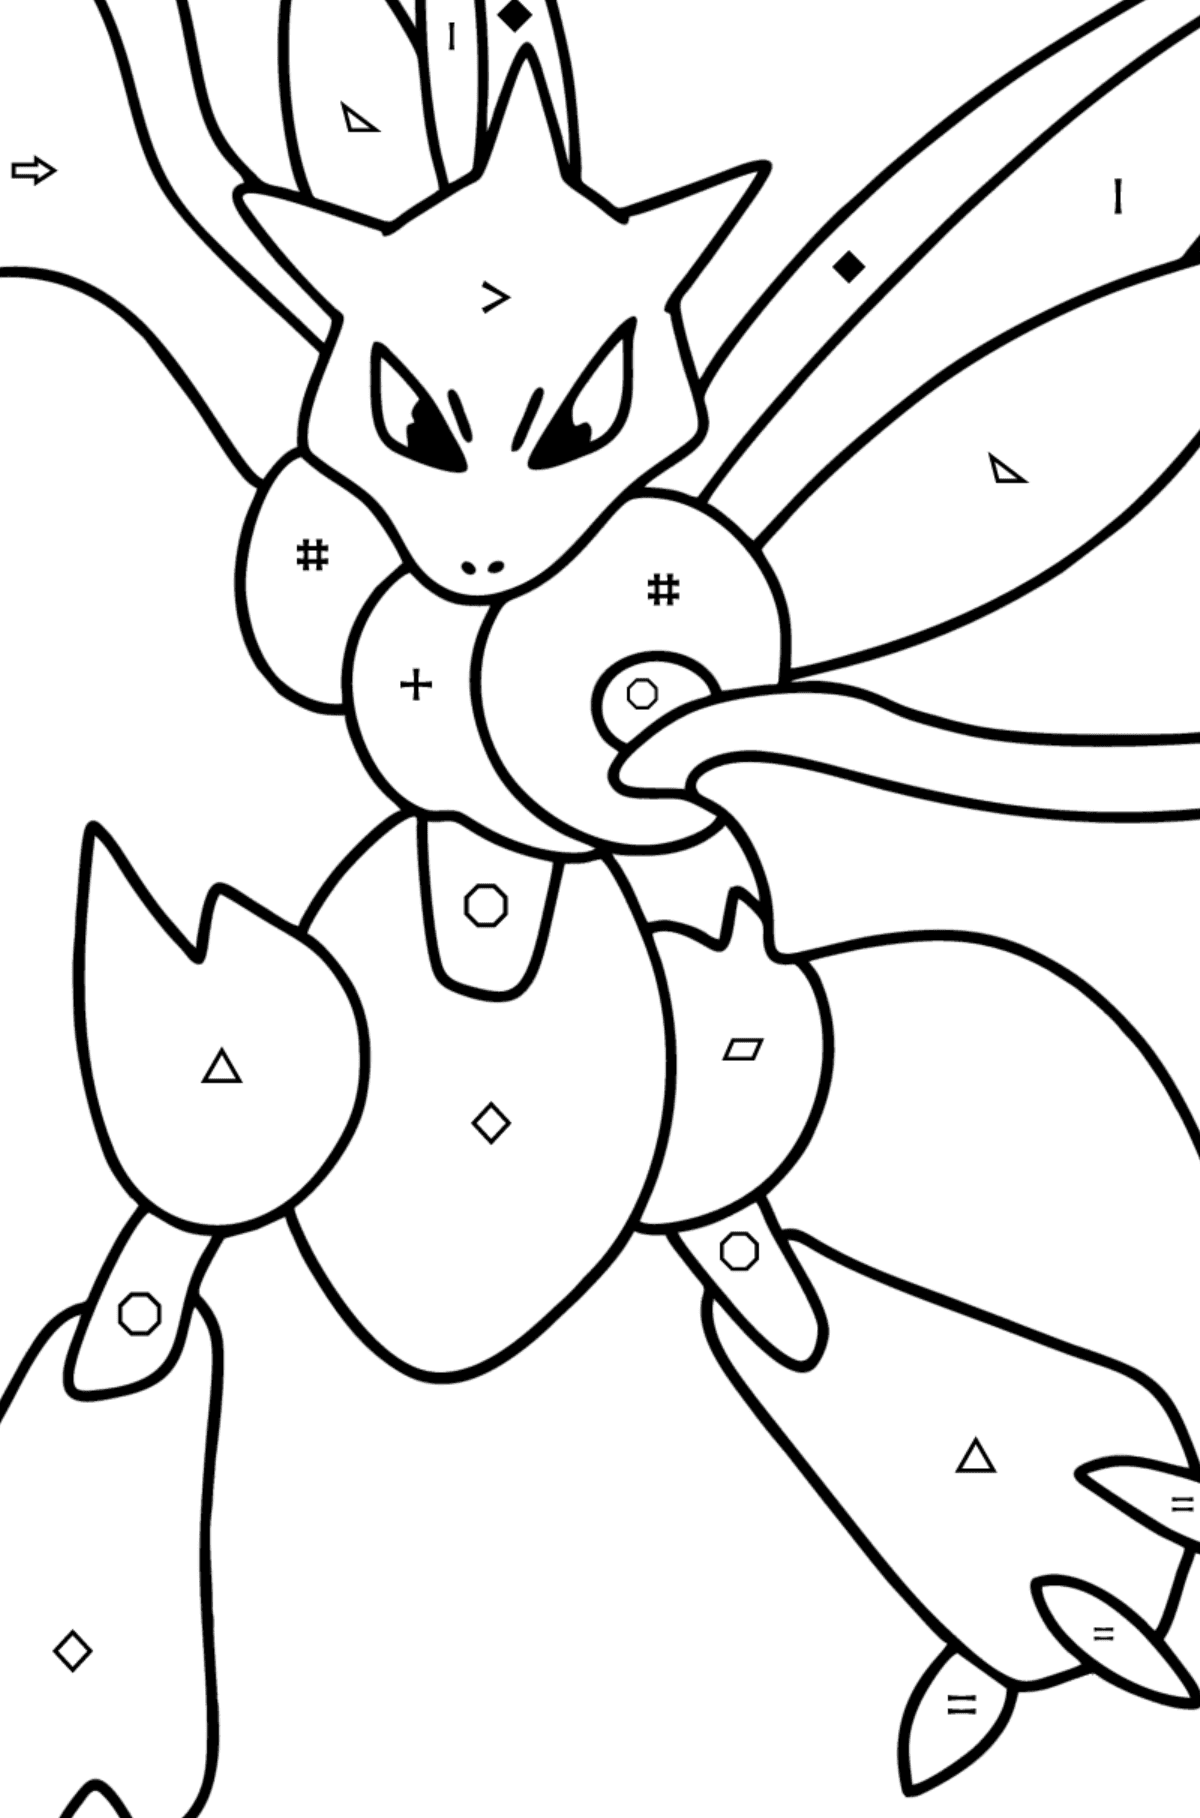 Розмальовка Pokemon Go Scyther - Розмальовка по Символам і Геометричним Фігурам для дітей